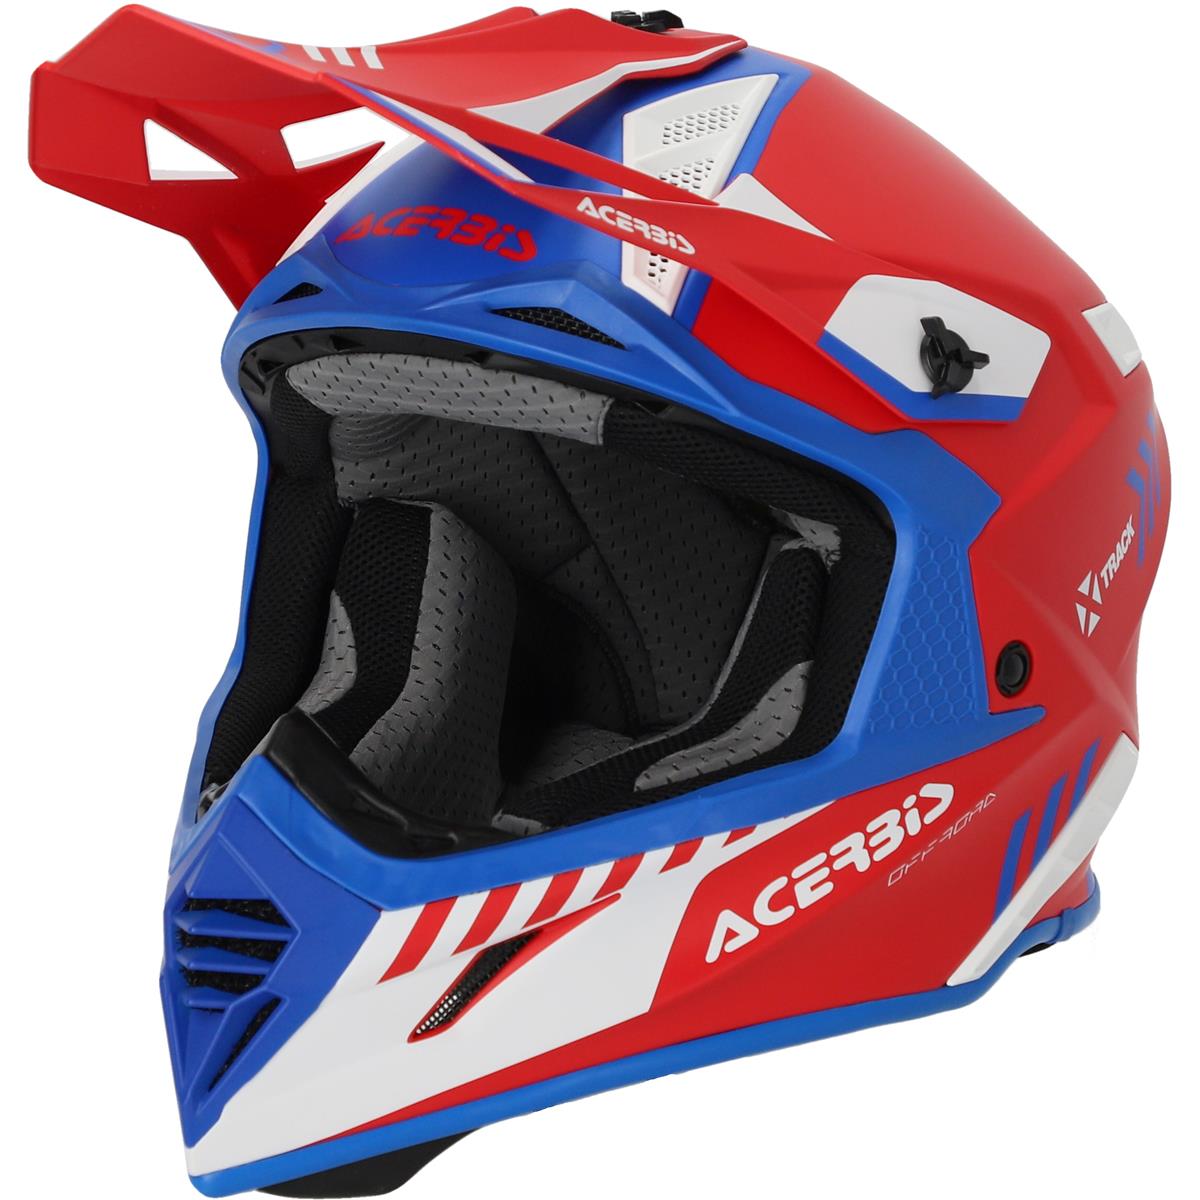 Acerbis Motocross-Helm X-Track Mips 22-06 Rot/Blau - Matt